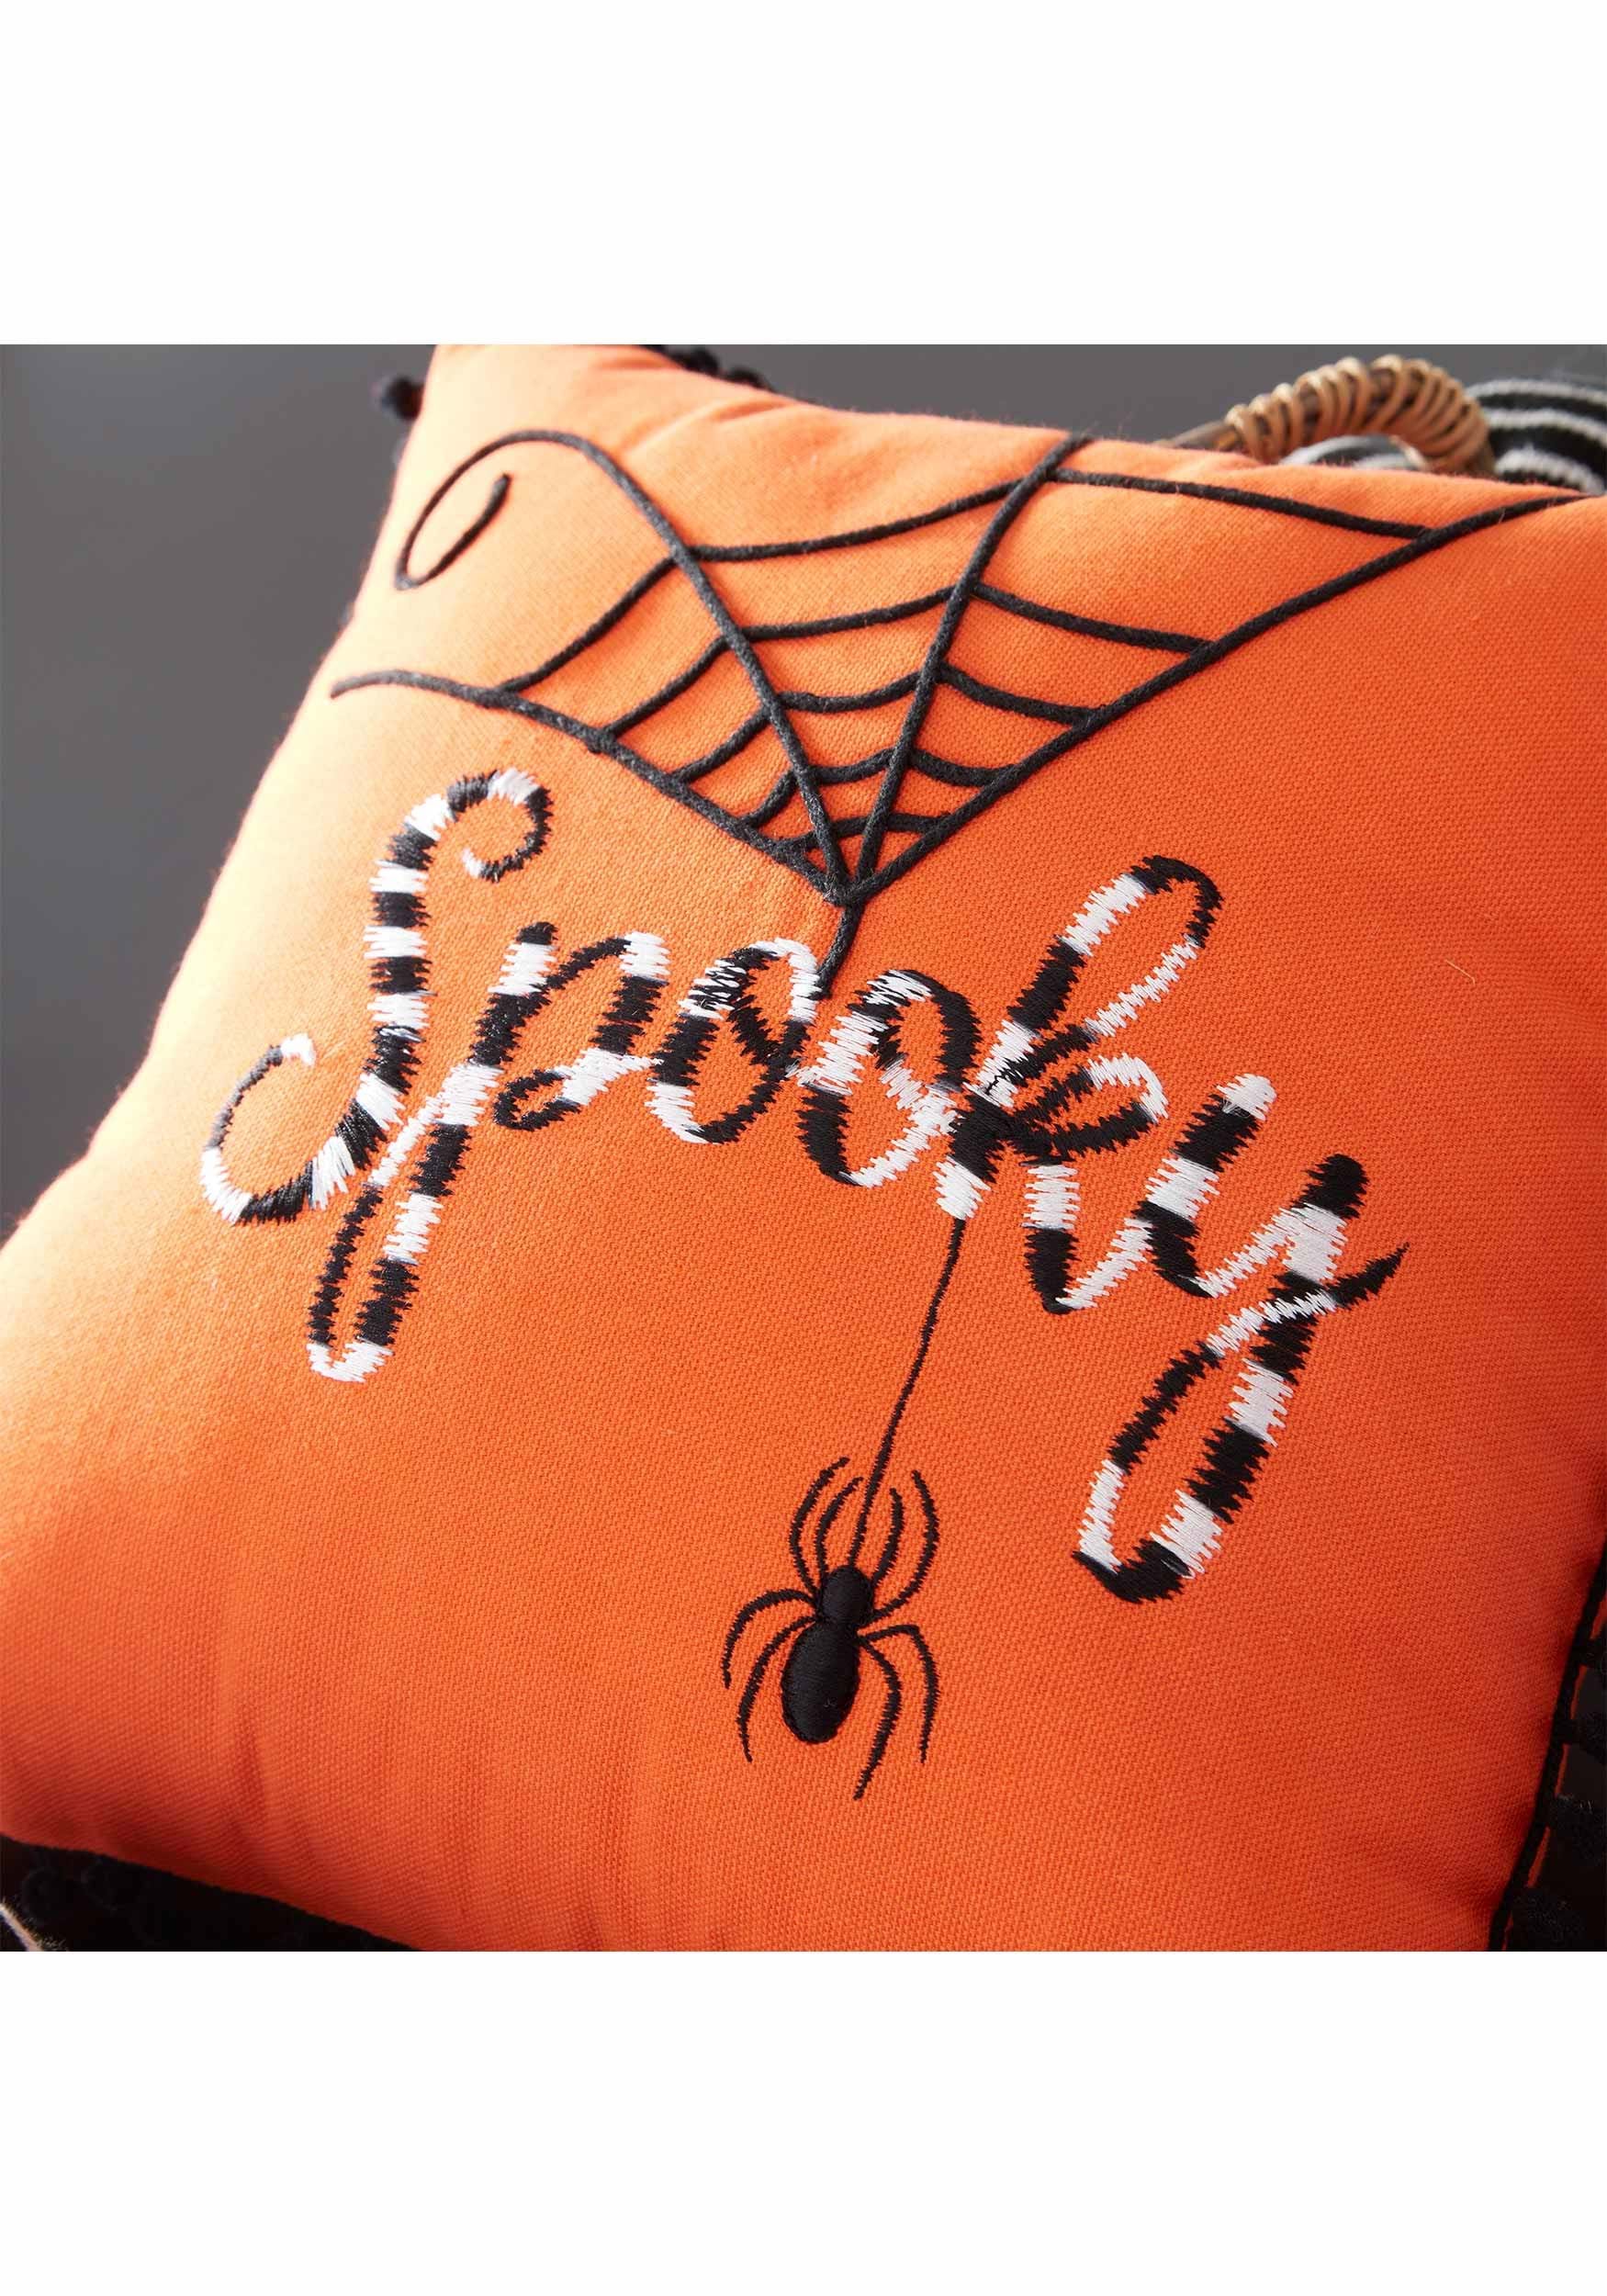 Almohada de Halloween decorativa de naranja de 12 pulgadas con bordado en blanco y negro Multicolor Colombia